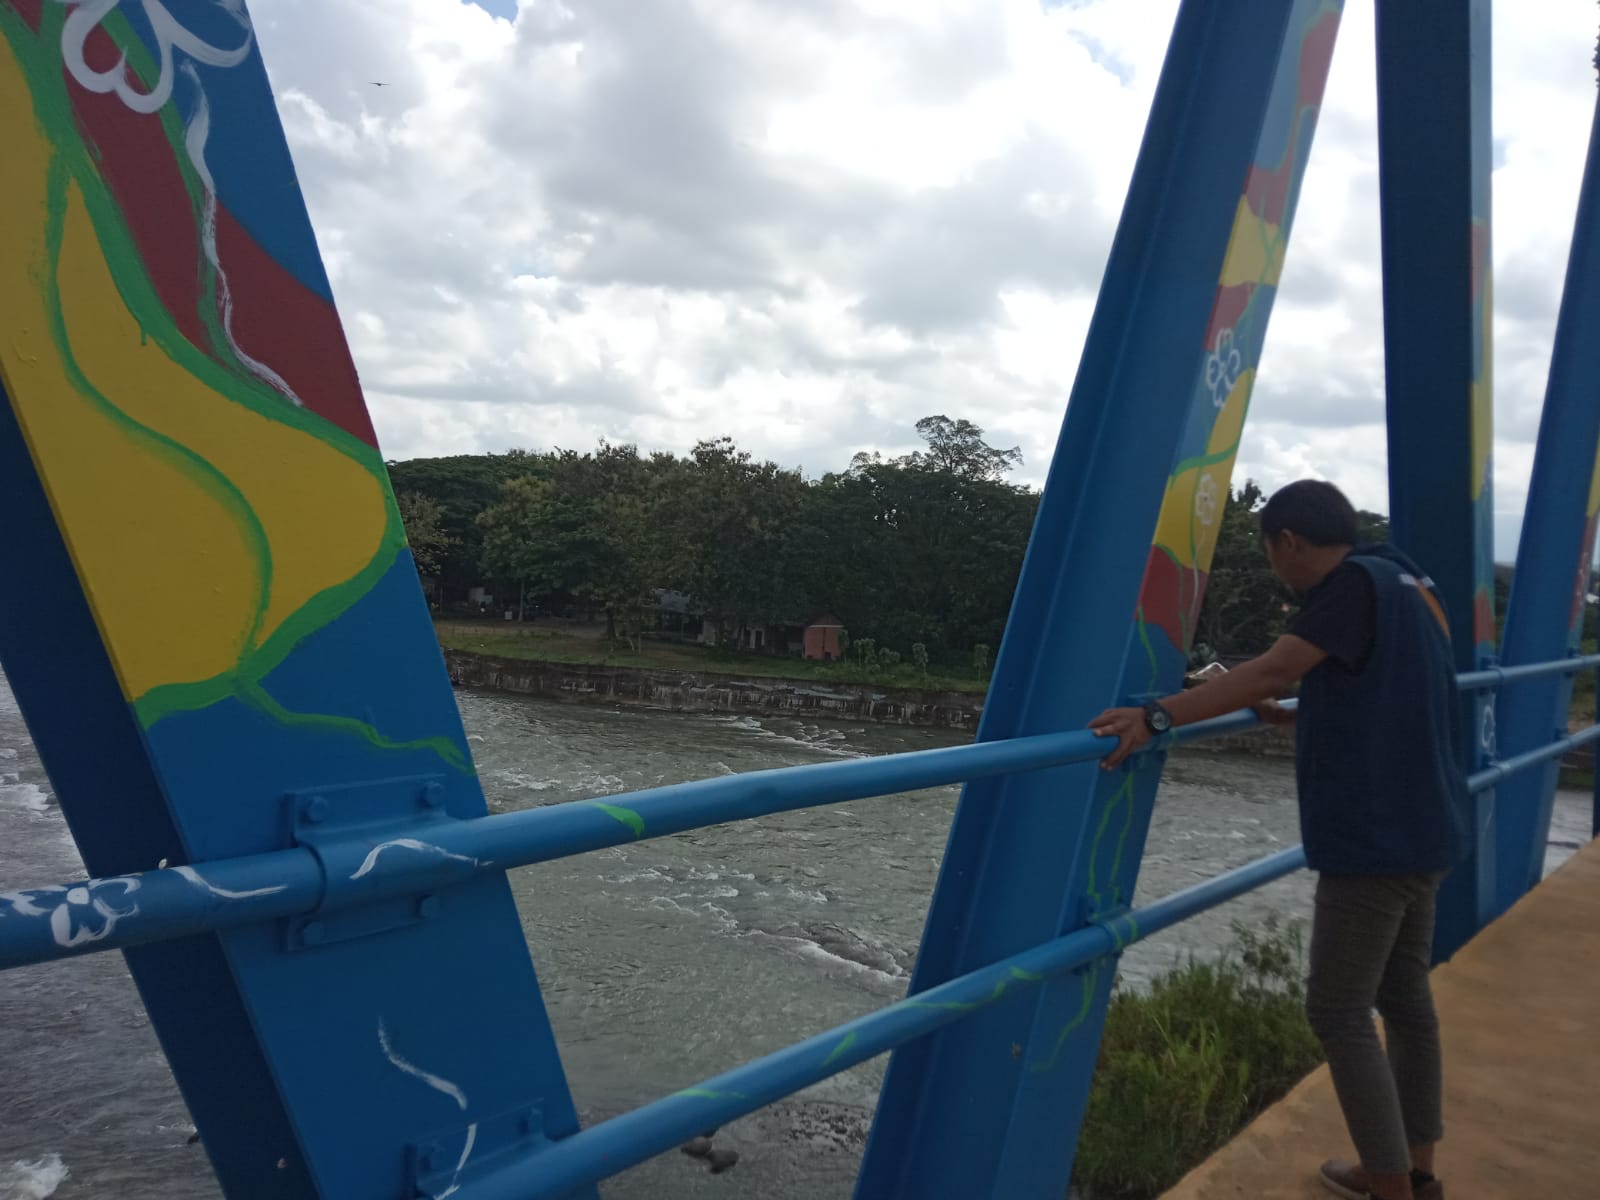 Jembatan Lematang yang Kece dan Instragramable yang ada di Kota Lahat